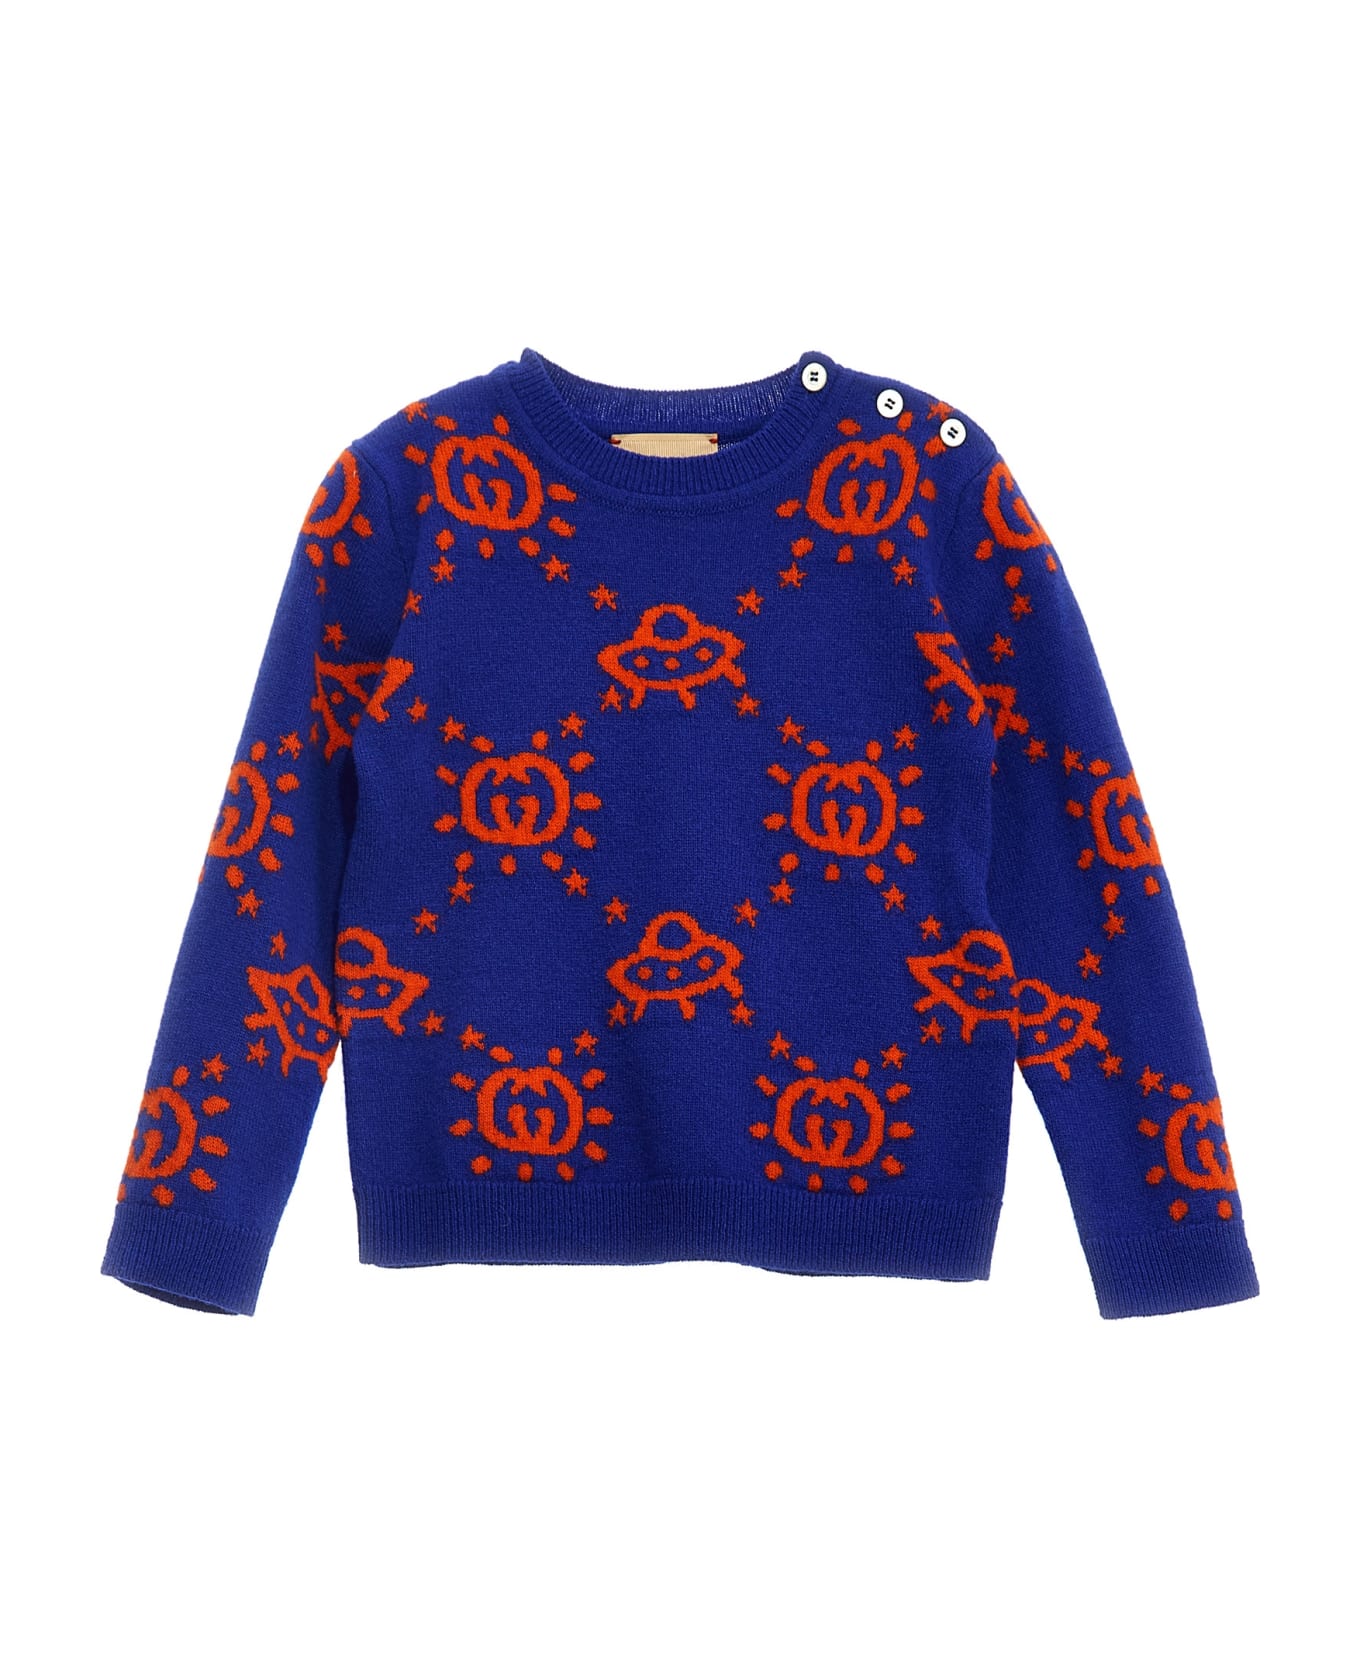 Gucci 'ufo' Sweater - Blu